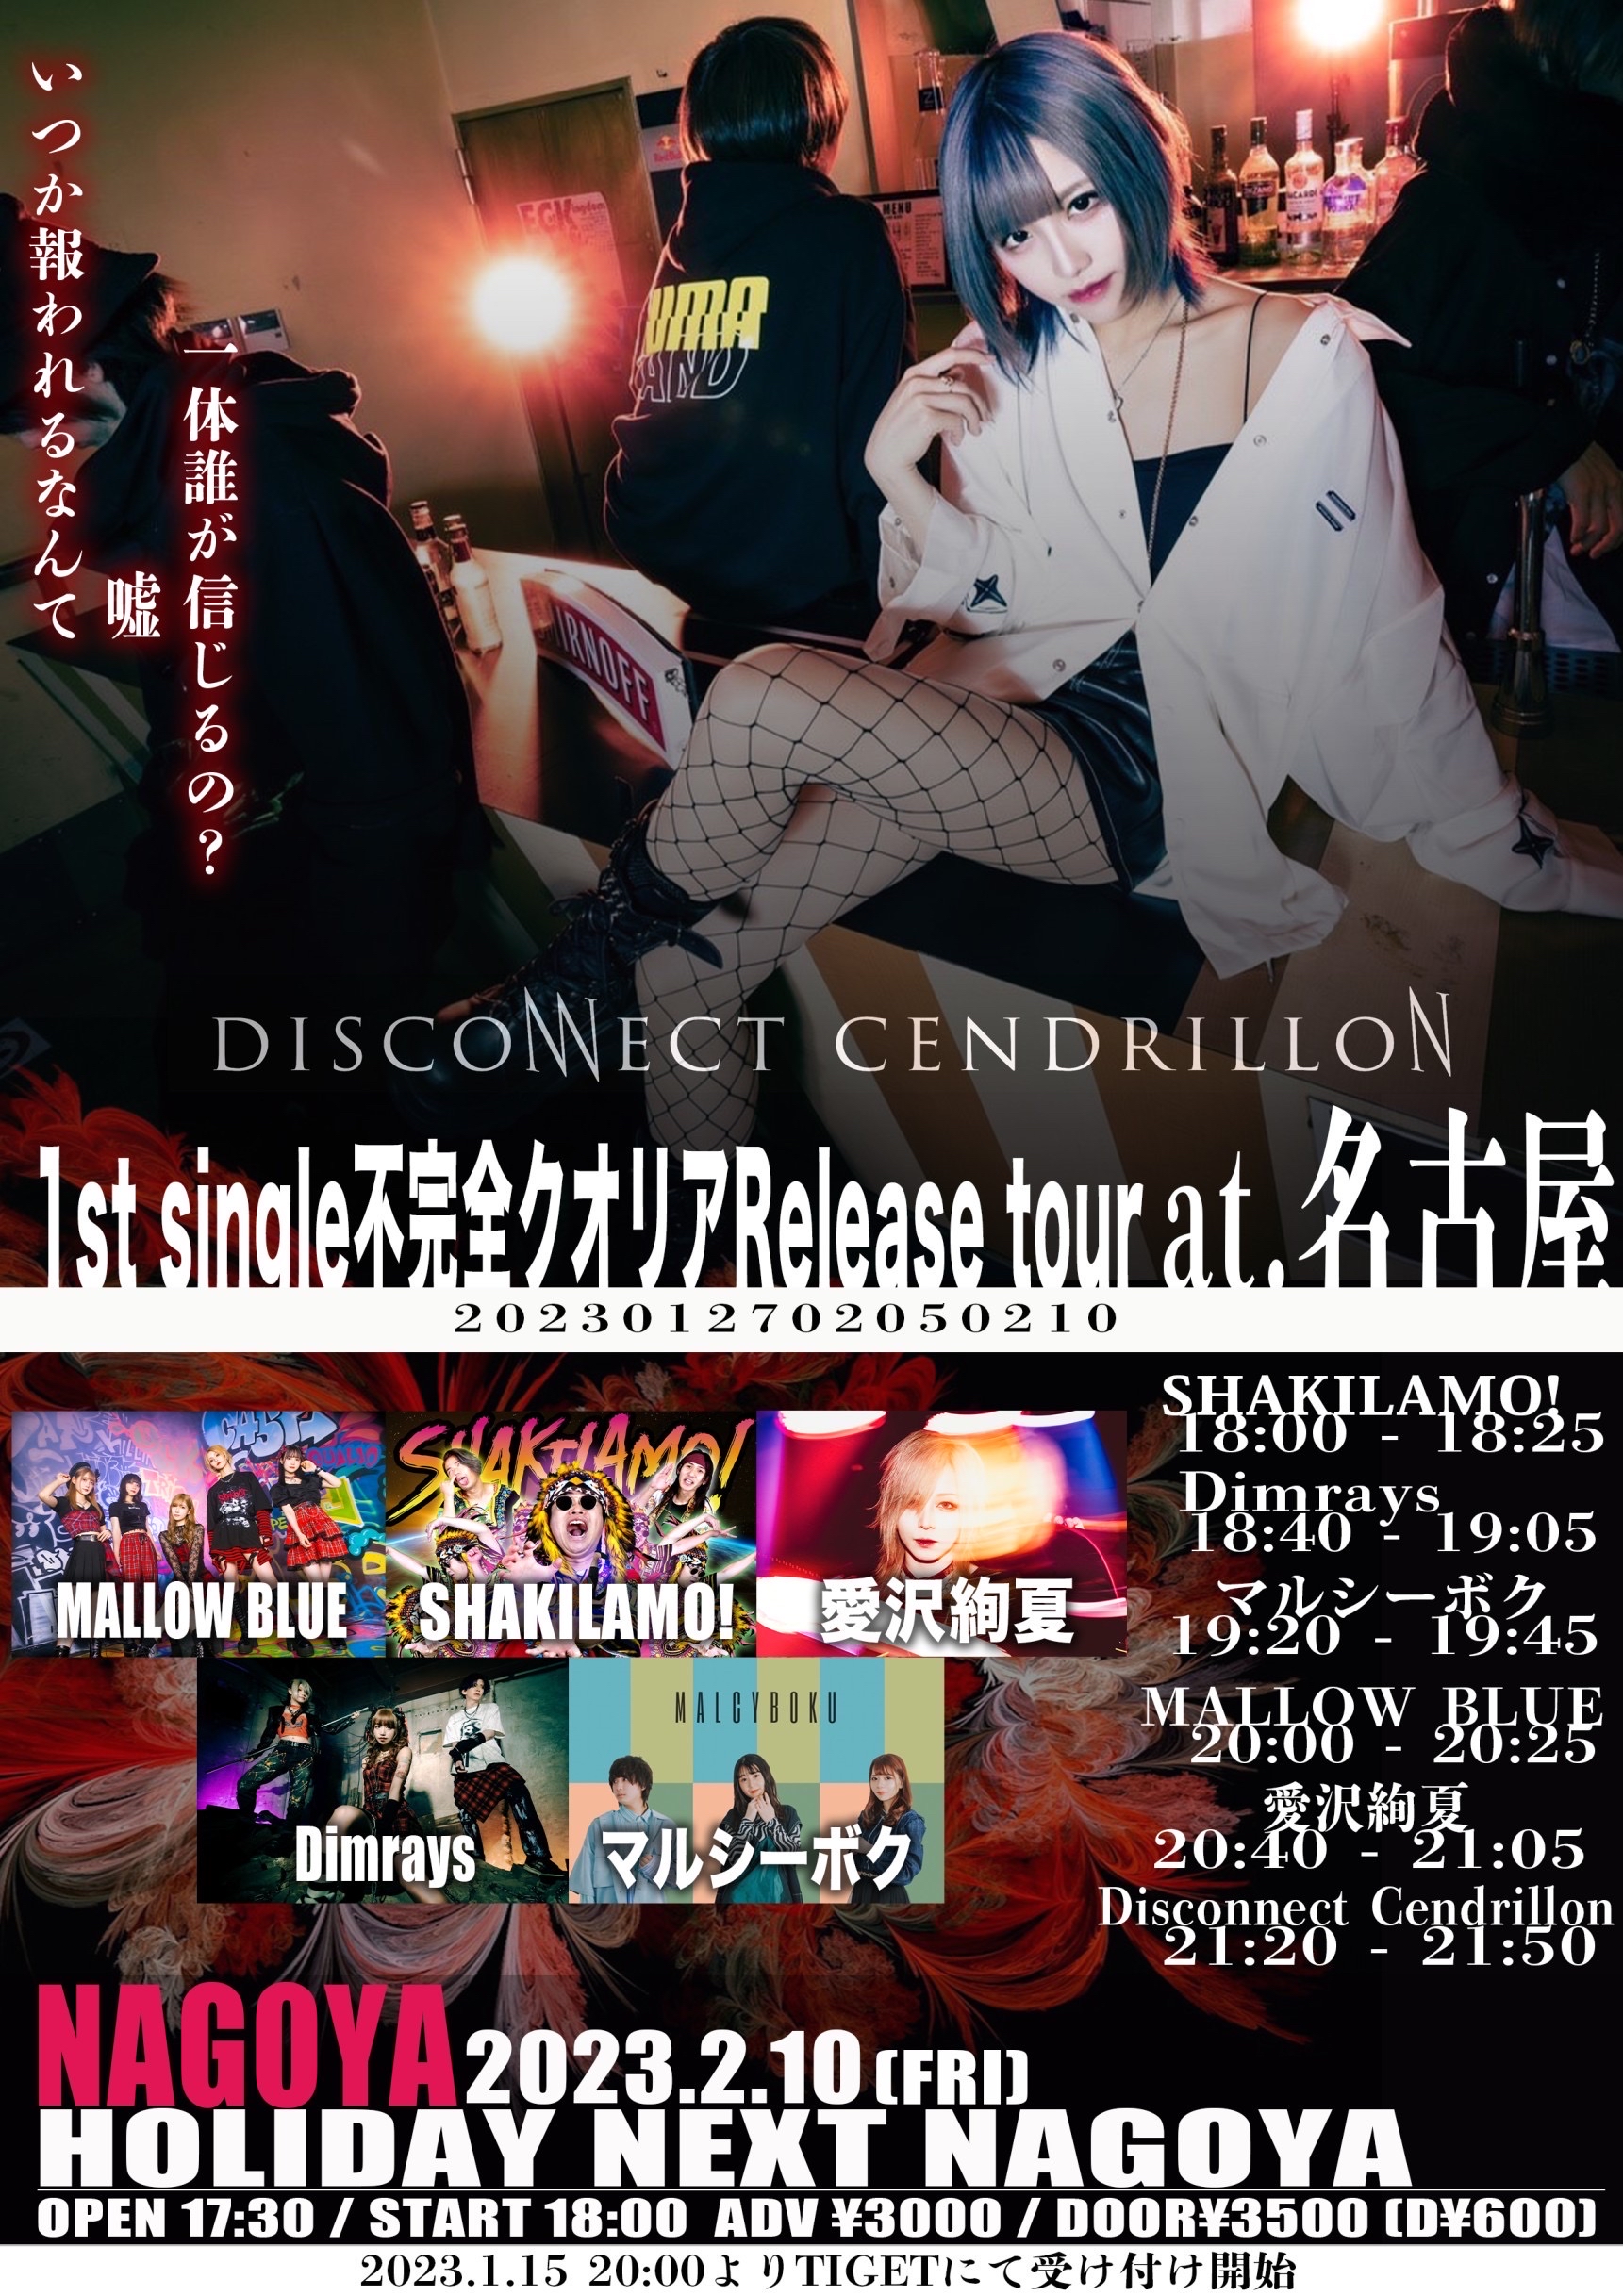 星井あおサポート出演公演(MALLOW BLUE)『Disconnect Cendrillon 1st single”不完全クオリア” release tour 名古屋編』